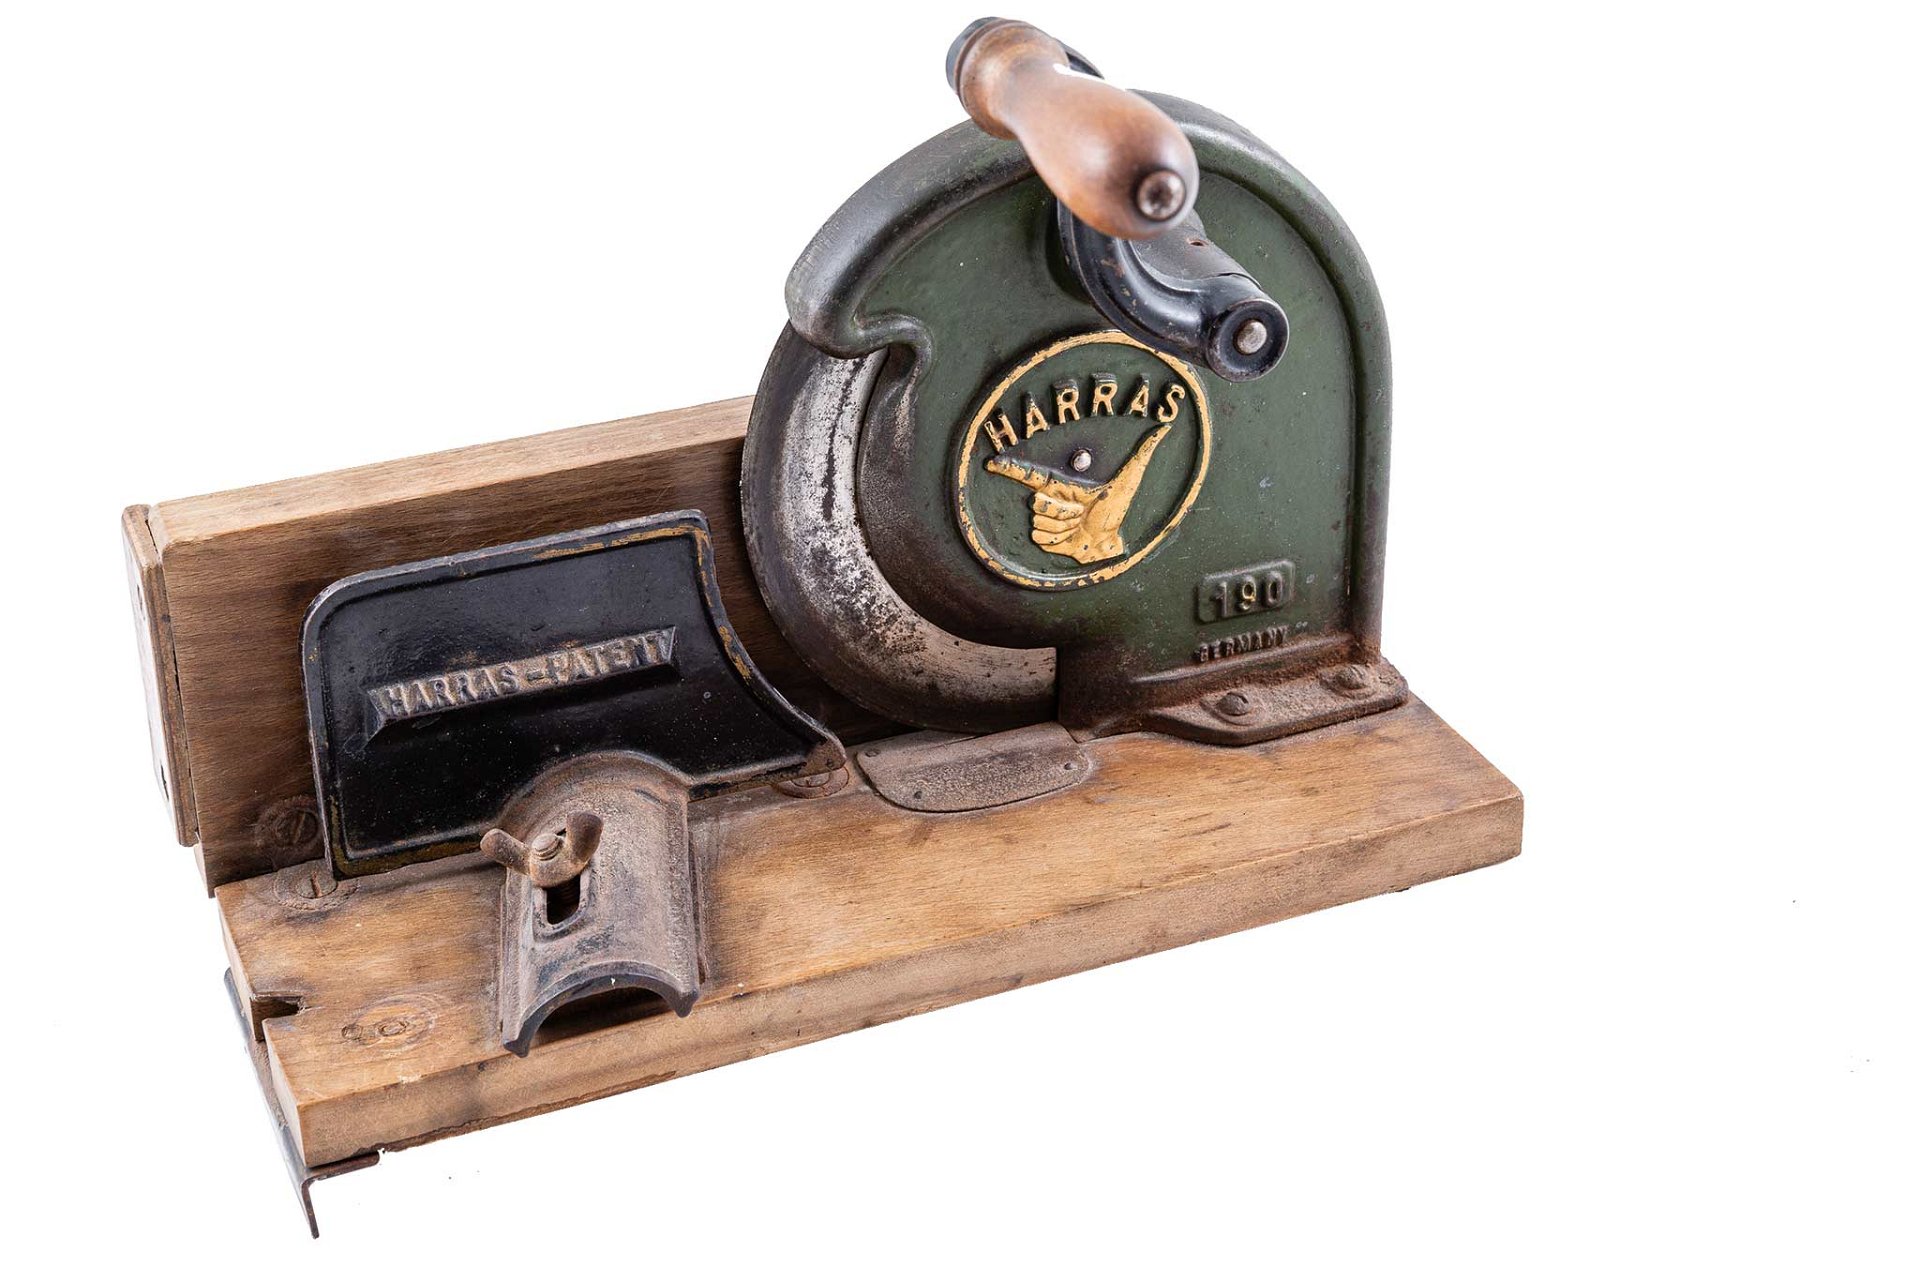 1908 Der deutsche Konstrukteur Willy Abel erfand einige der heute bekannten Haushaltsgeräte – so entwarf er auch die erste Brotschneidemaschine, für deren Herstellung er 1912 die Harras-Werke gründete.